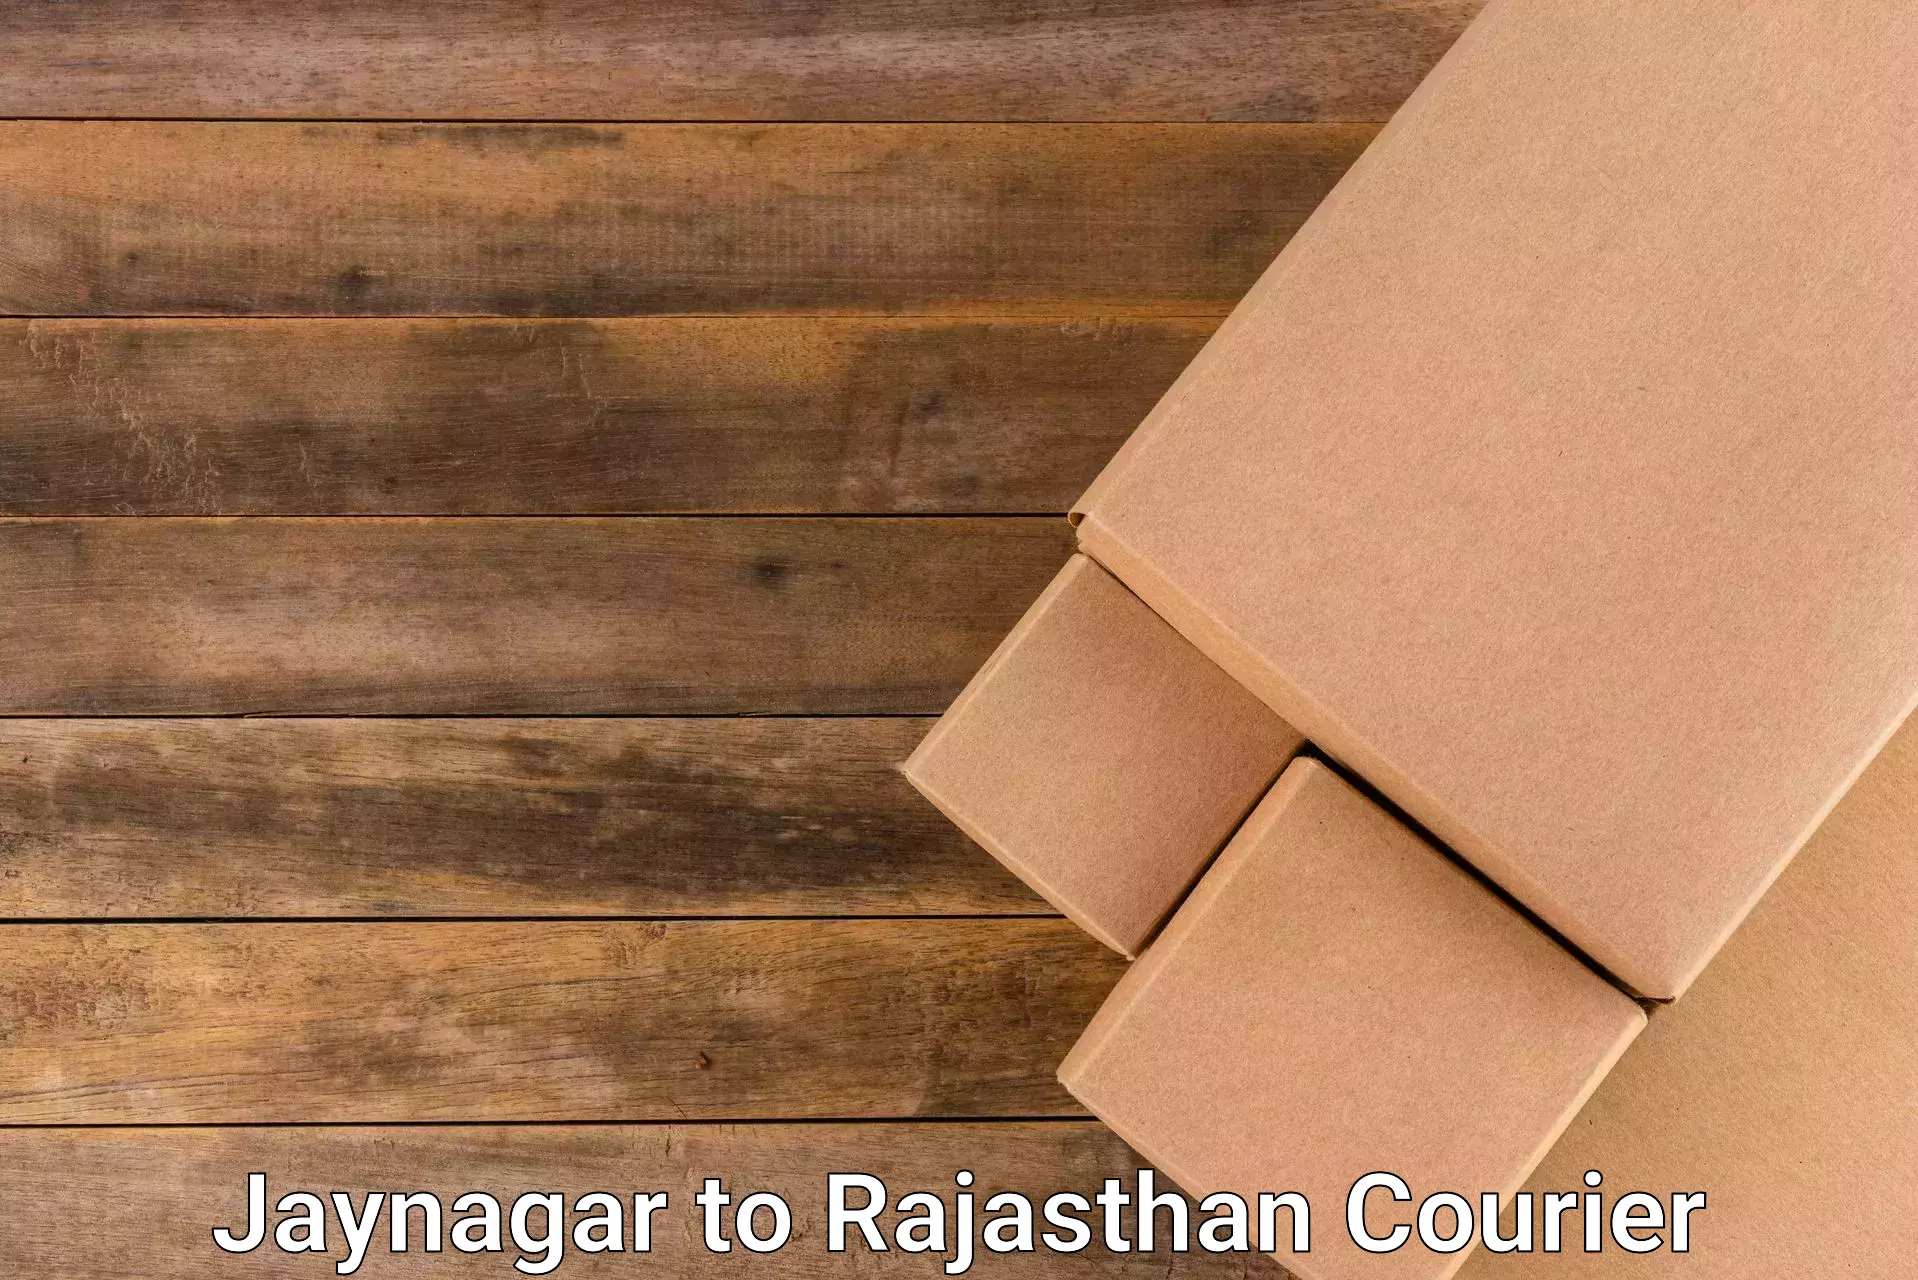 Cost-effective shipping solutions Jaynagar to Sri Vijaynagar